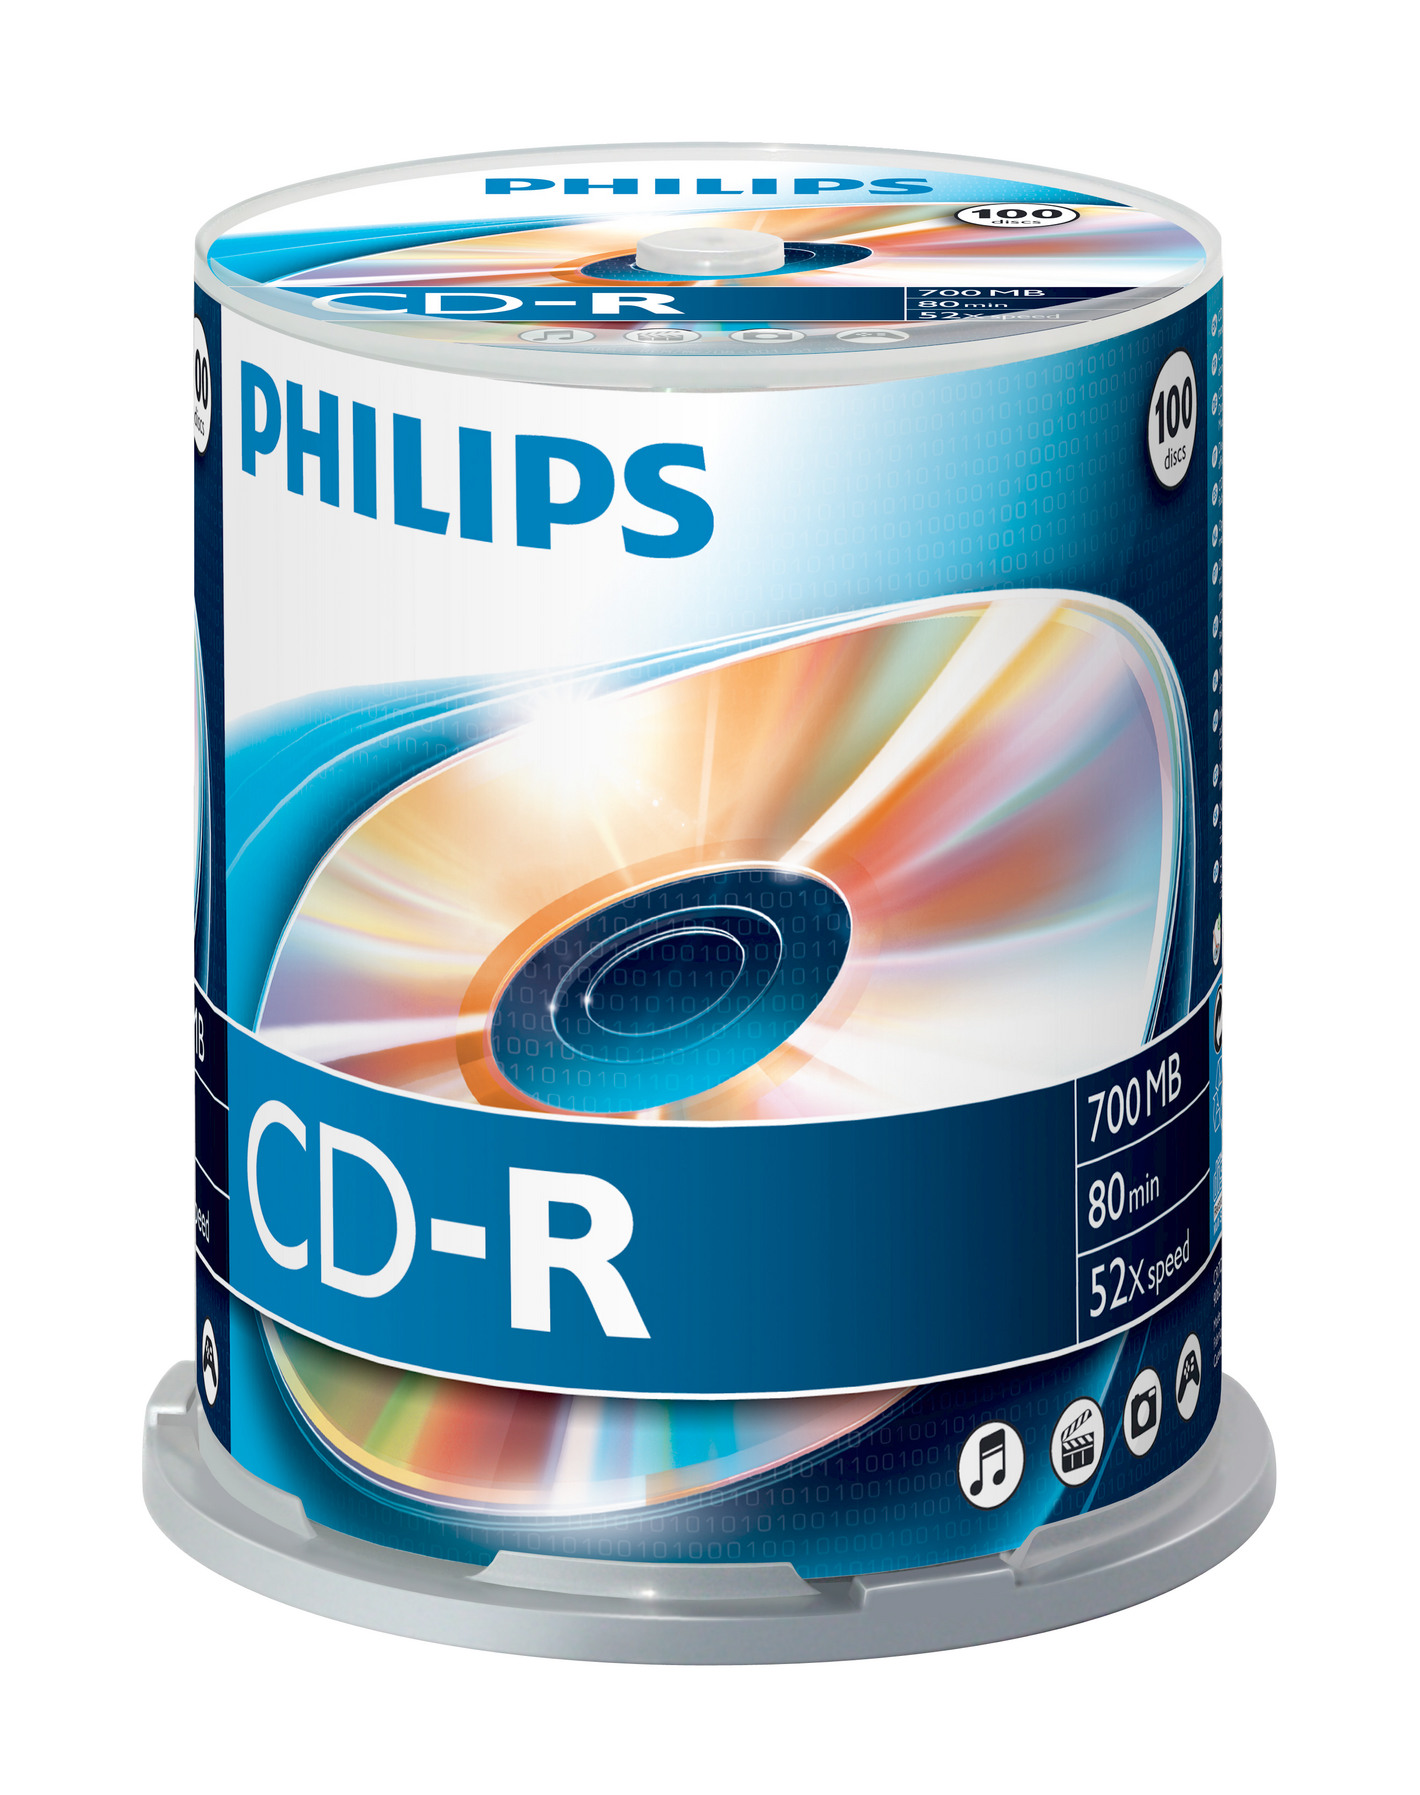 PHILIPS CD-R CR7D5NB00 100er Spindel